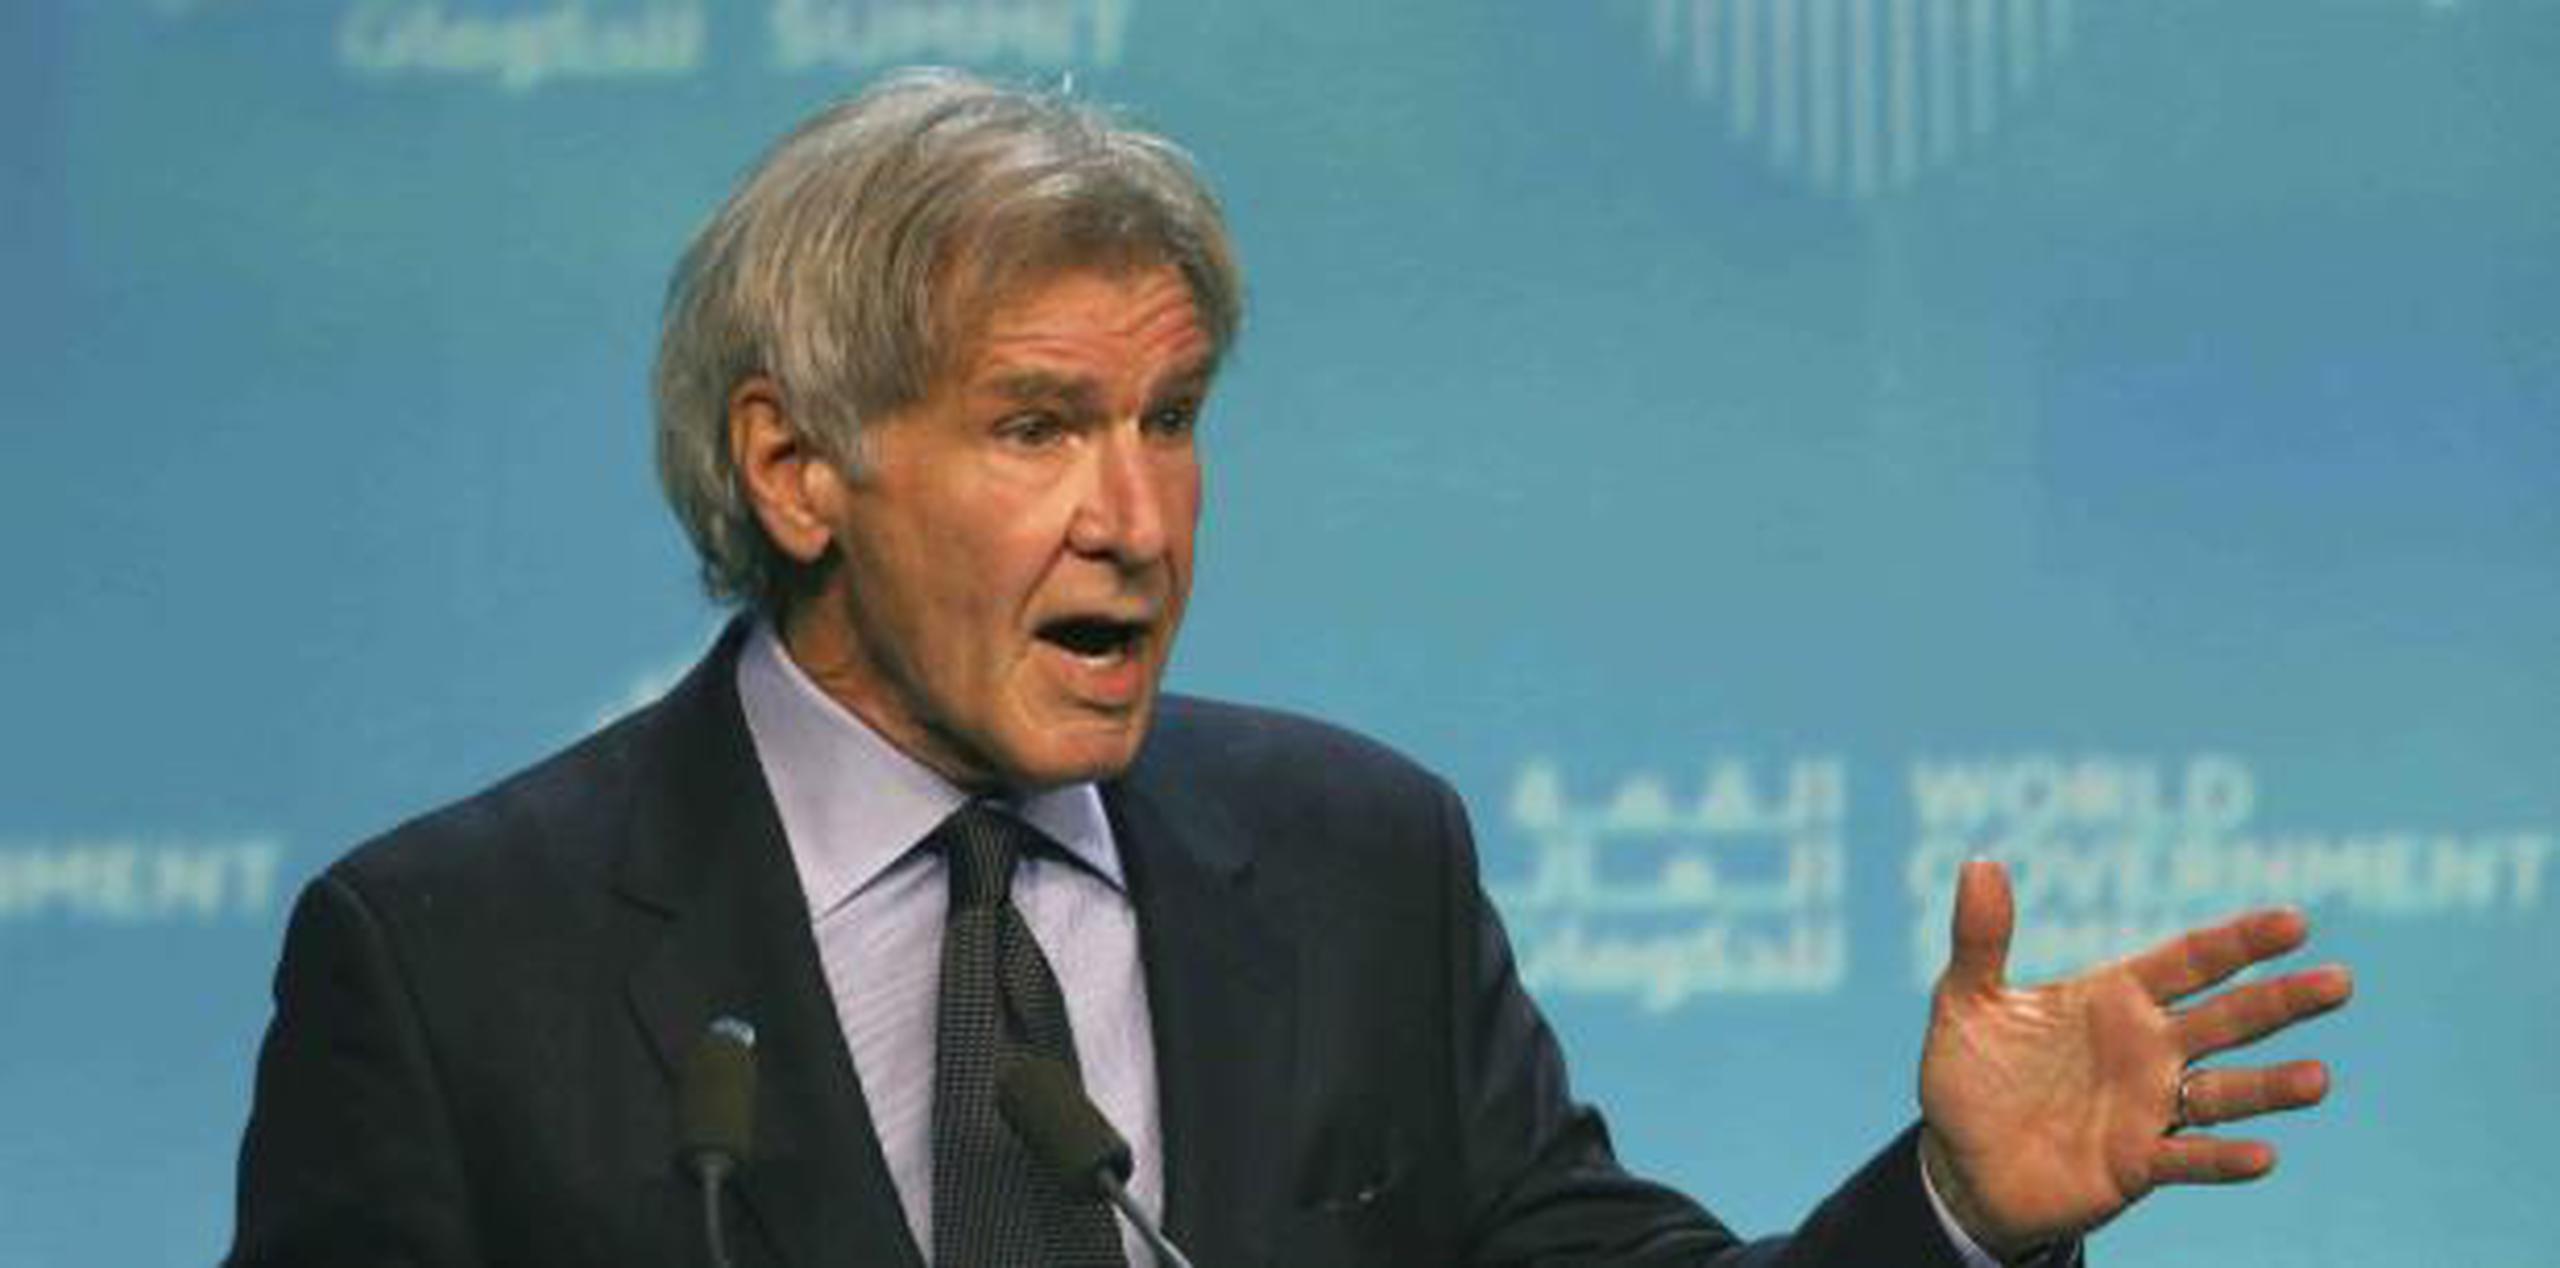 Harrison Ford, conocido por sus papeles en "Star Wars" e "Indiana Jones", siempre ha respaldado los esfuerzos de conservación. (AP / Jon Gambrell)